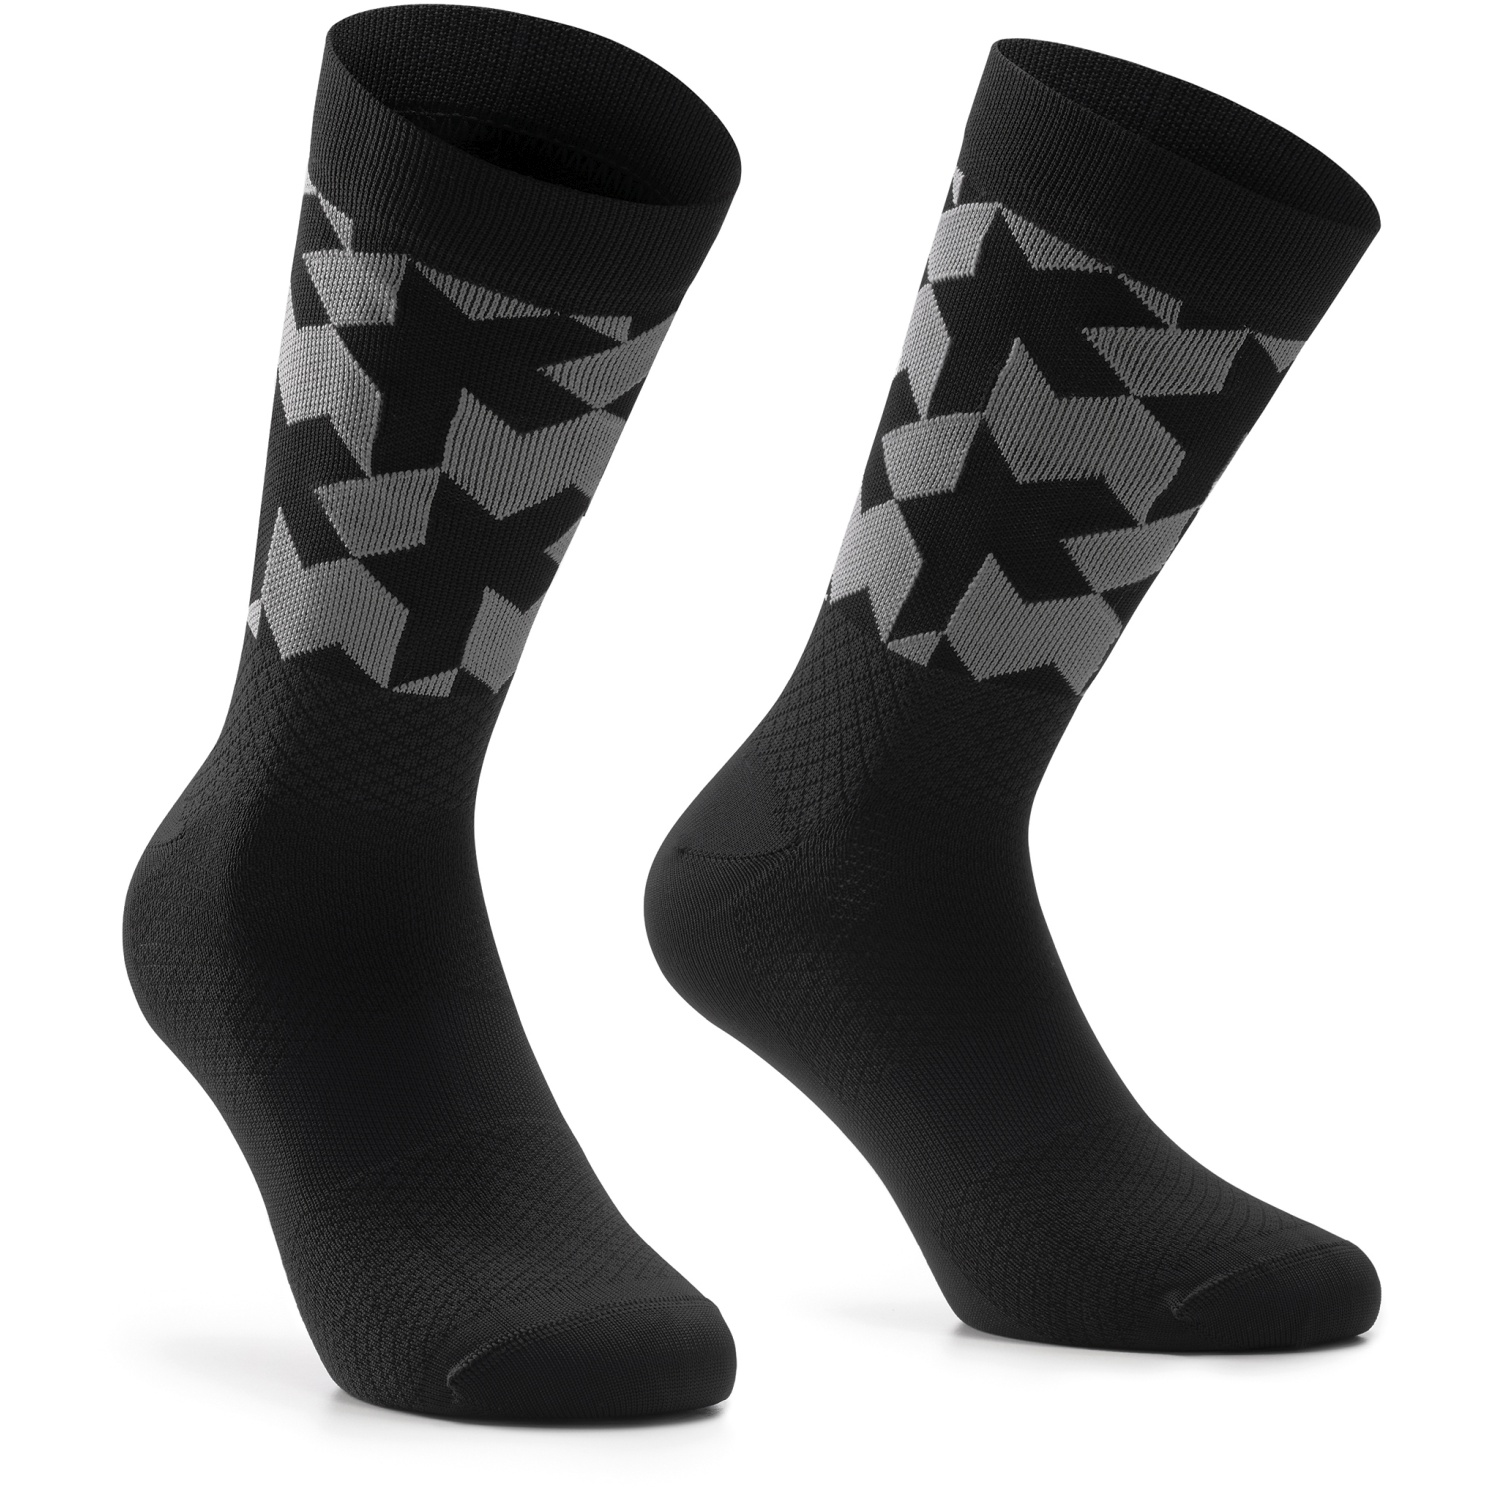 Produktbild von Assos Monogram Socken Evo - schwarz